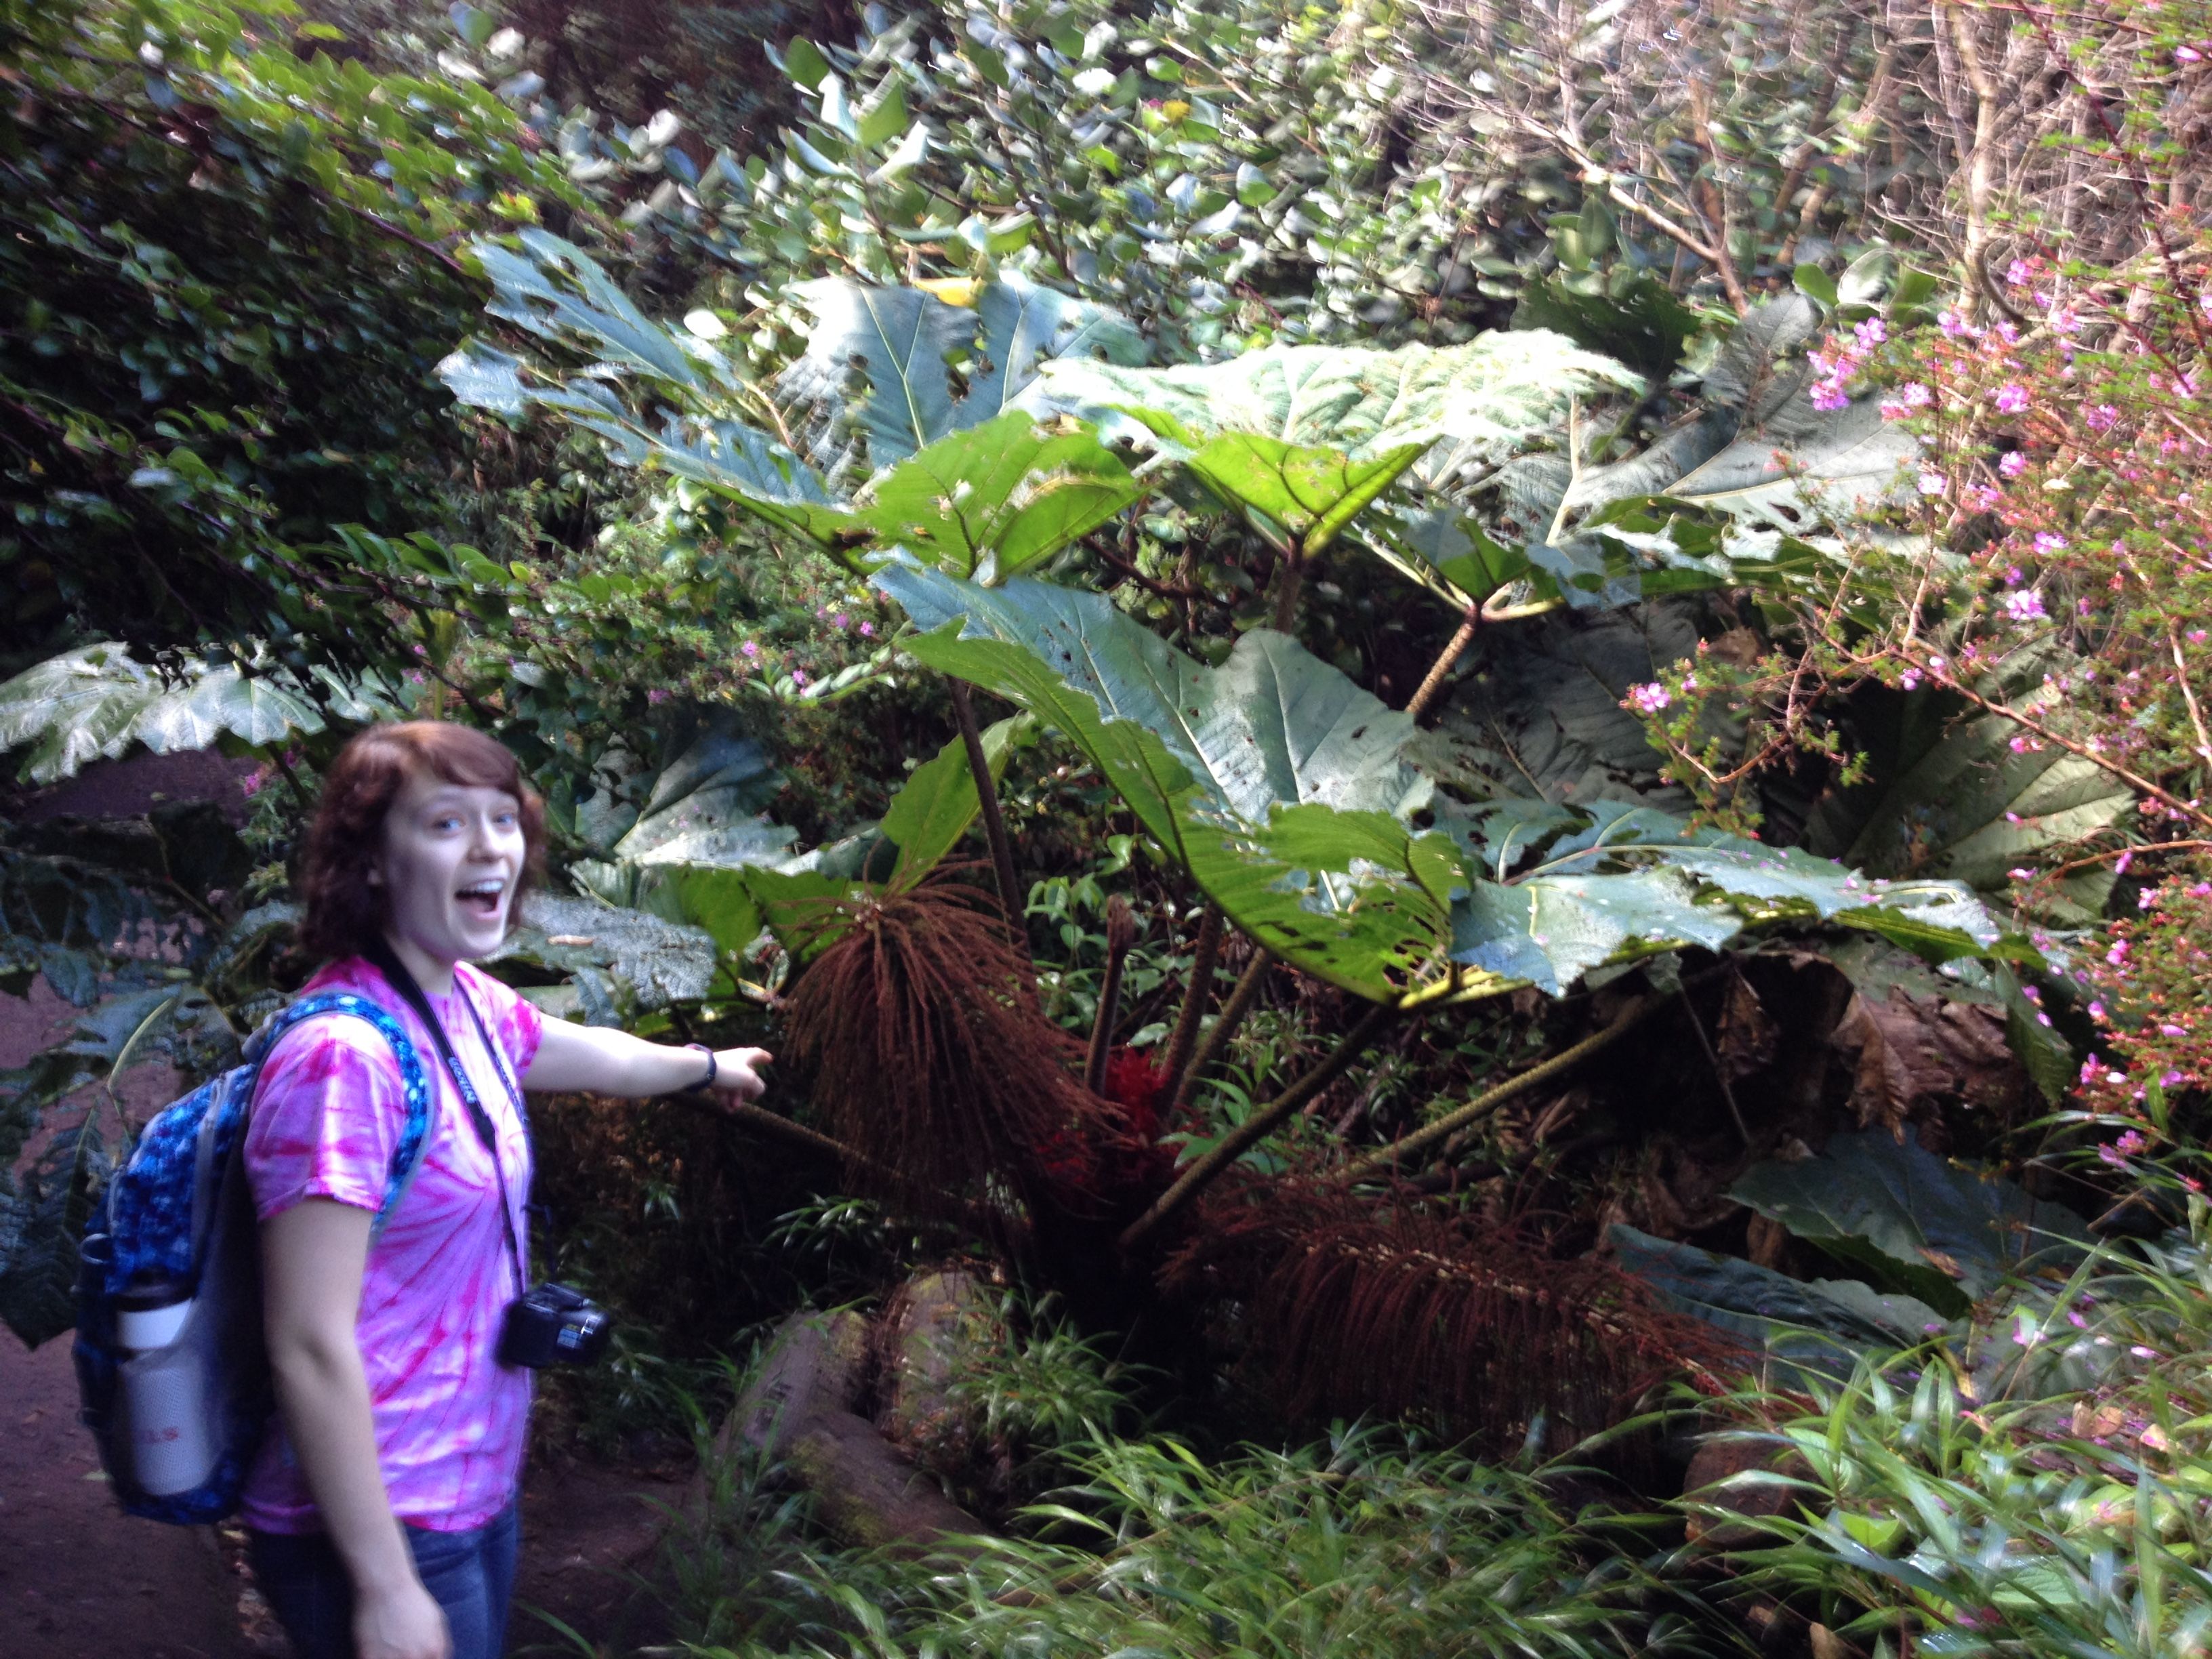 Kolumnisti "Teron" tytär Tracy hämmästeli Costa Rican luonnon vihreyttä, mikä selittyy runsaalla vuosittaisella sademääräälä.